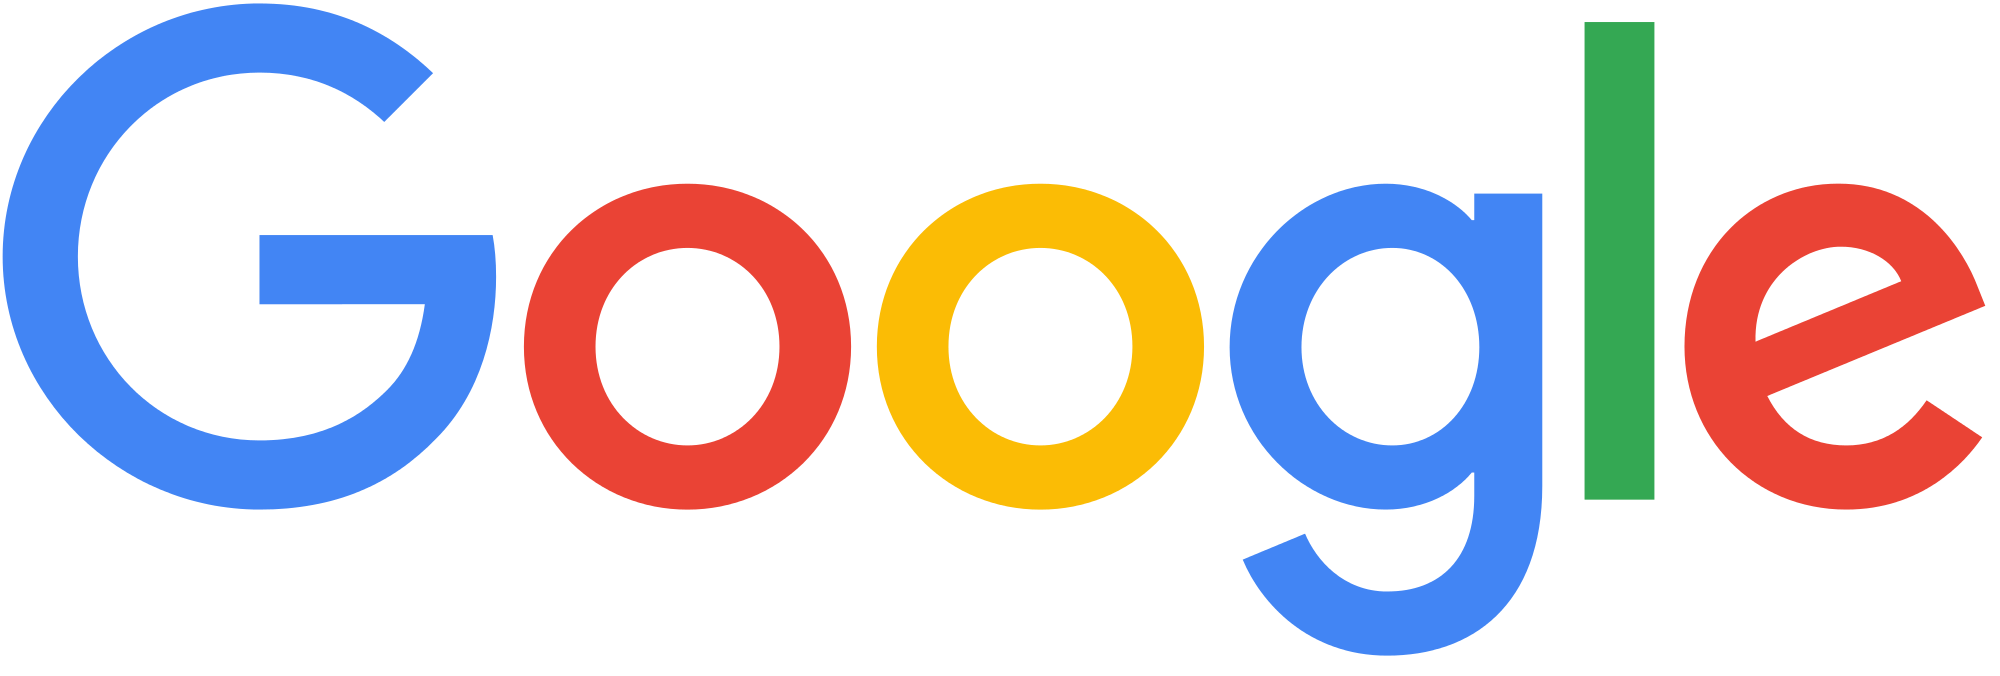 google_logo_.png